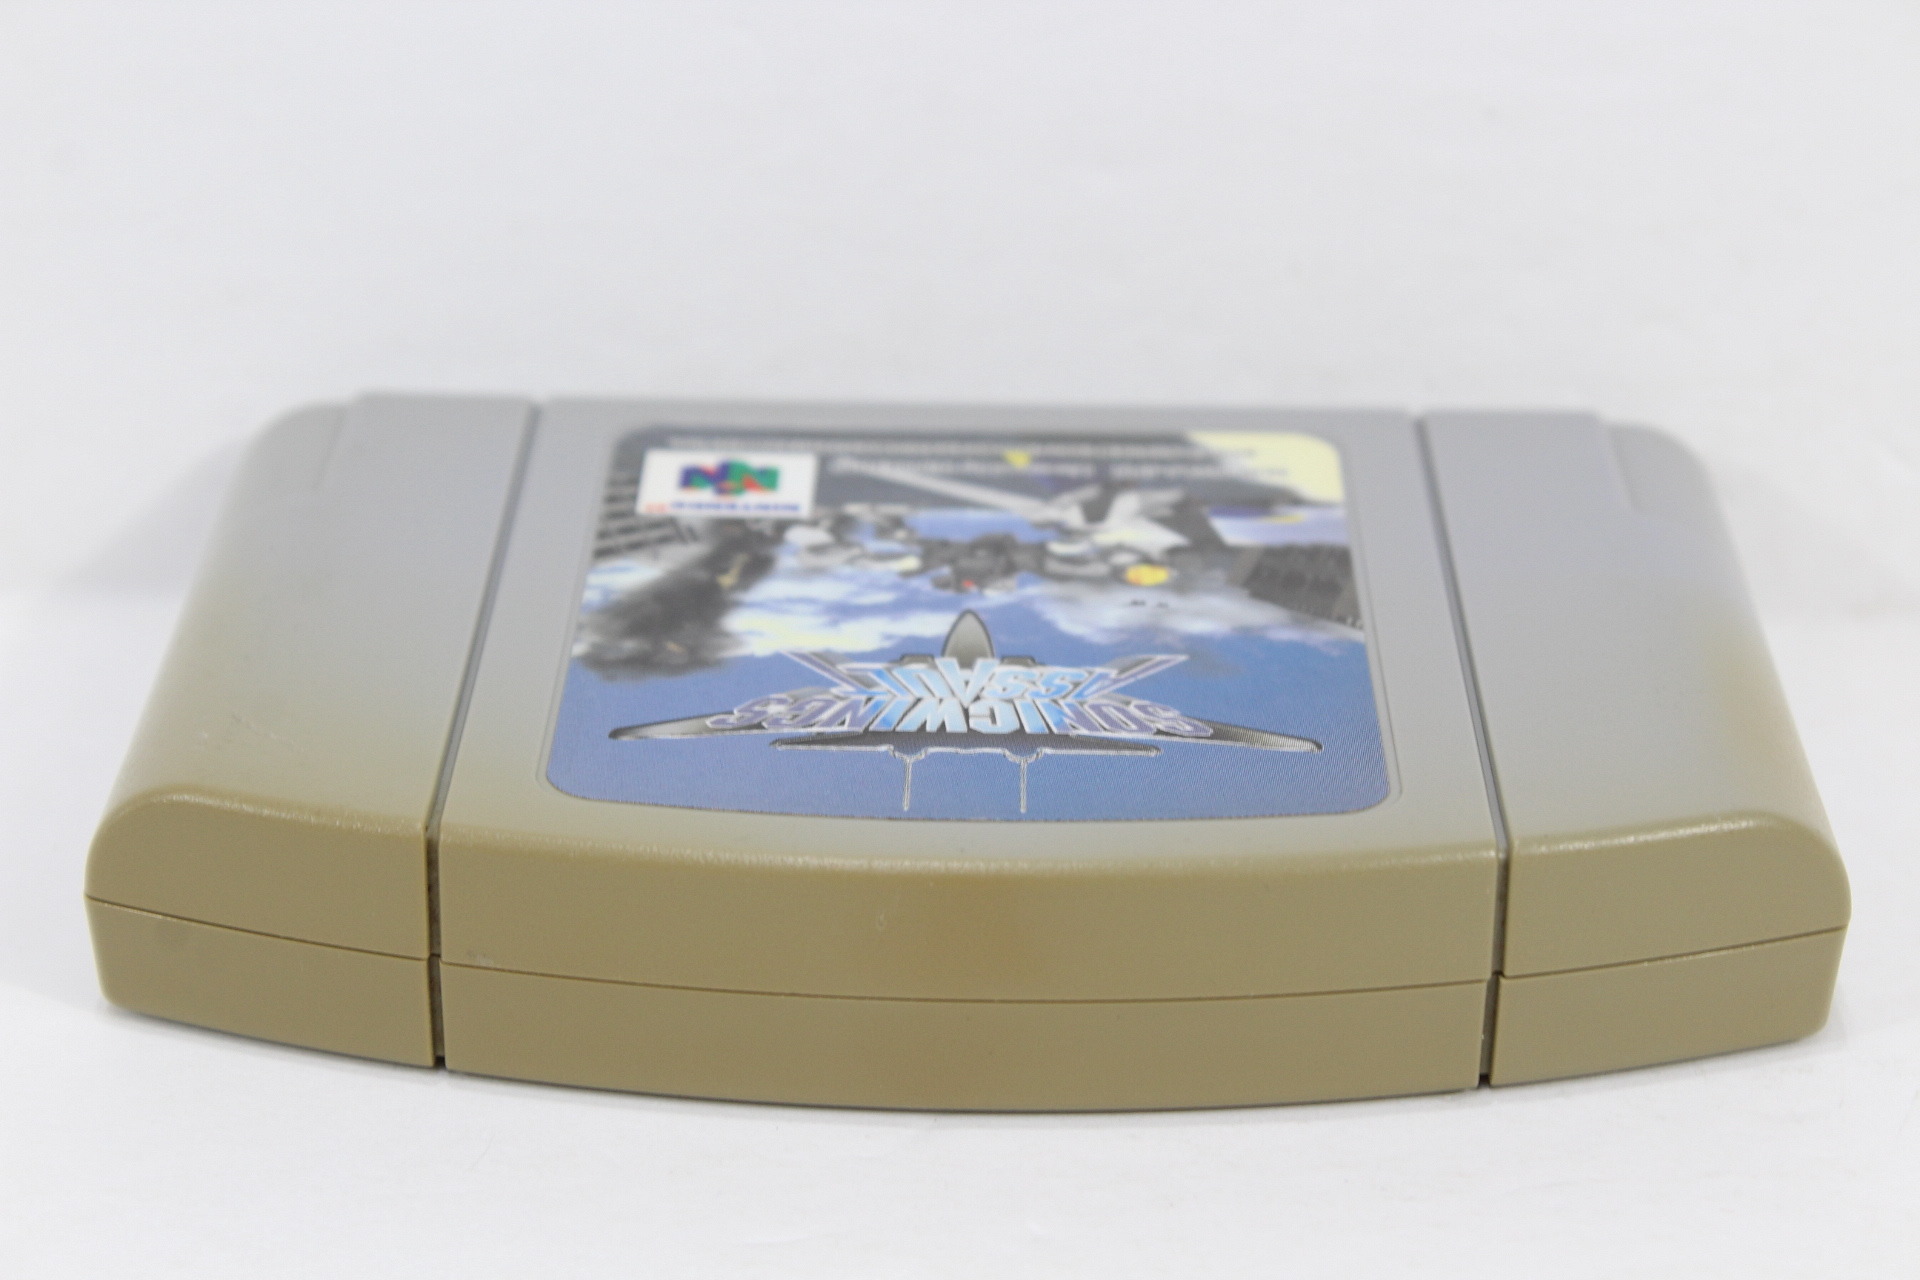 Fita Legend Of Zelda Ocarina Of Time N64 Em Pt Br